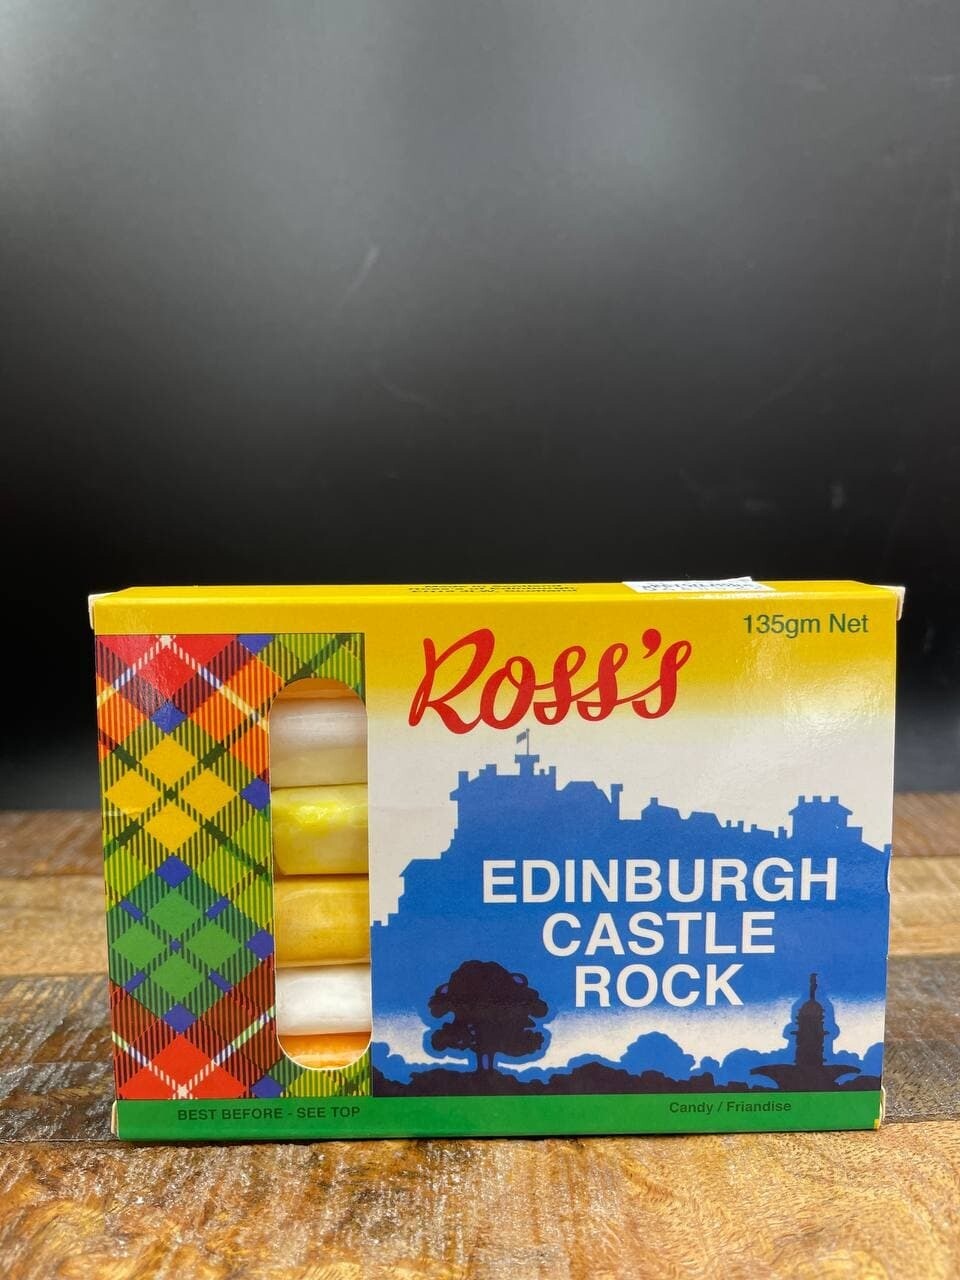 Ross's Edinburgh Castle Rock 135g